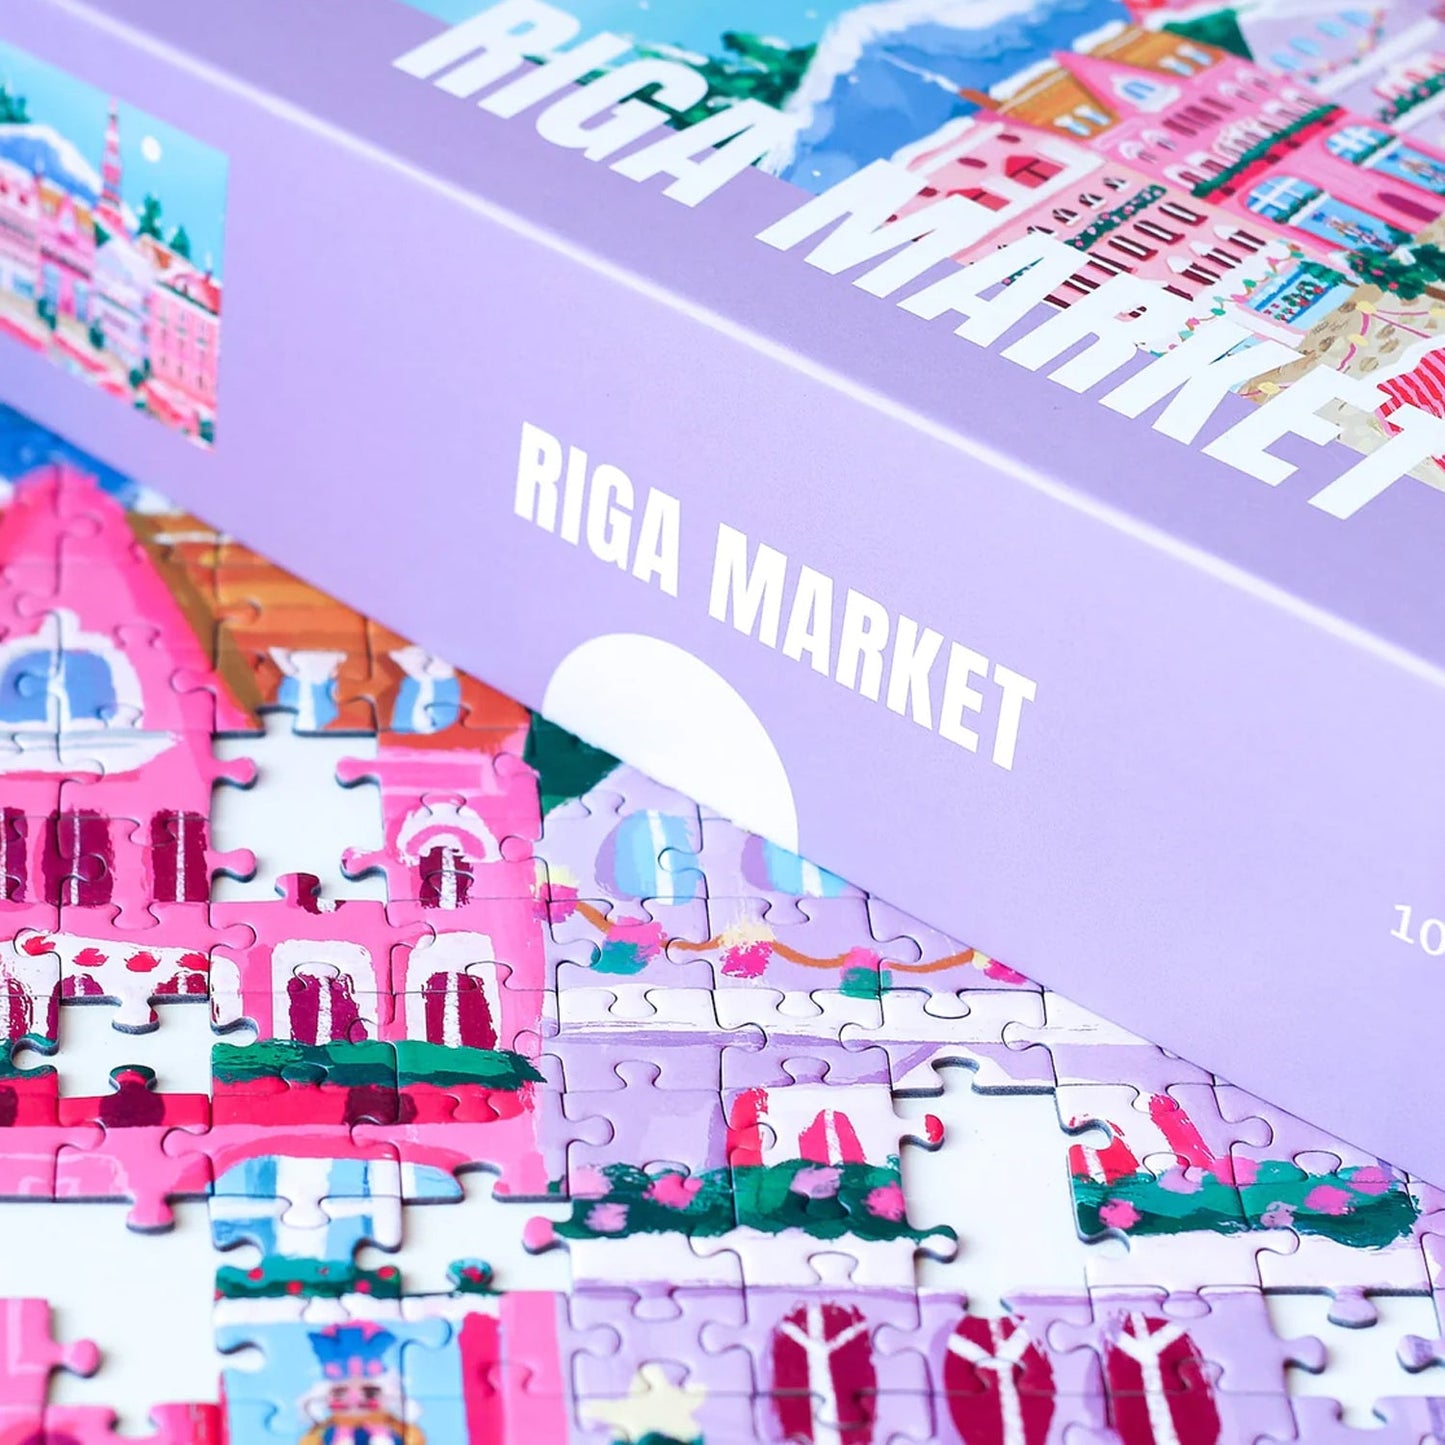 Puzzle piecely 1000 pièces Riga market